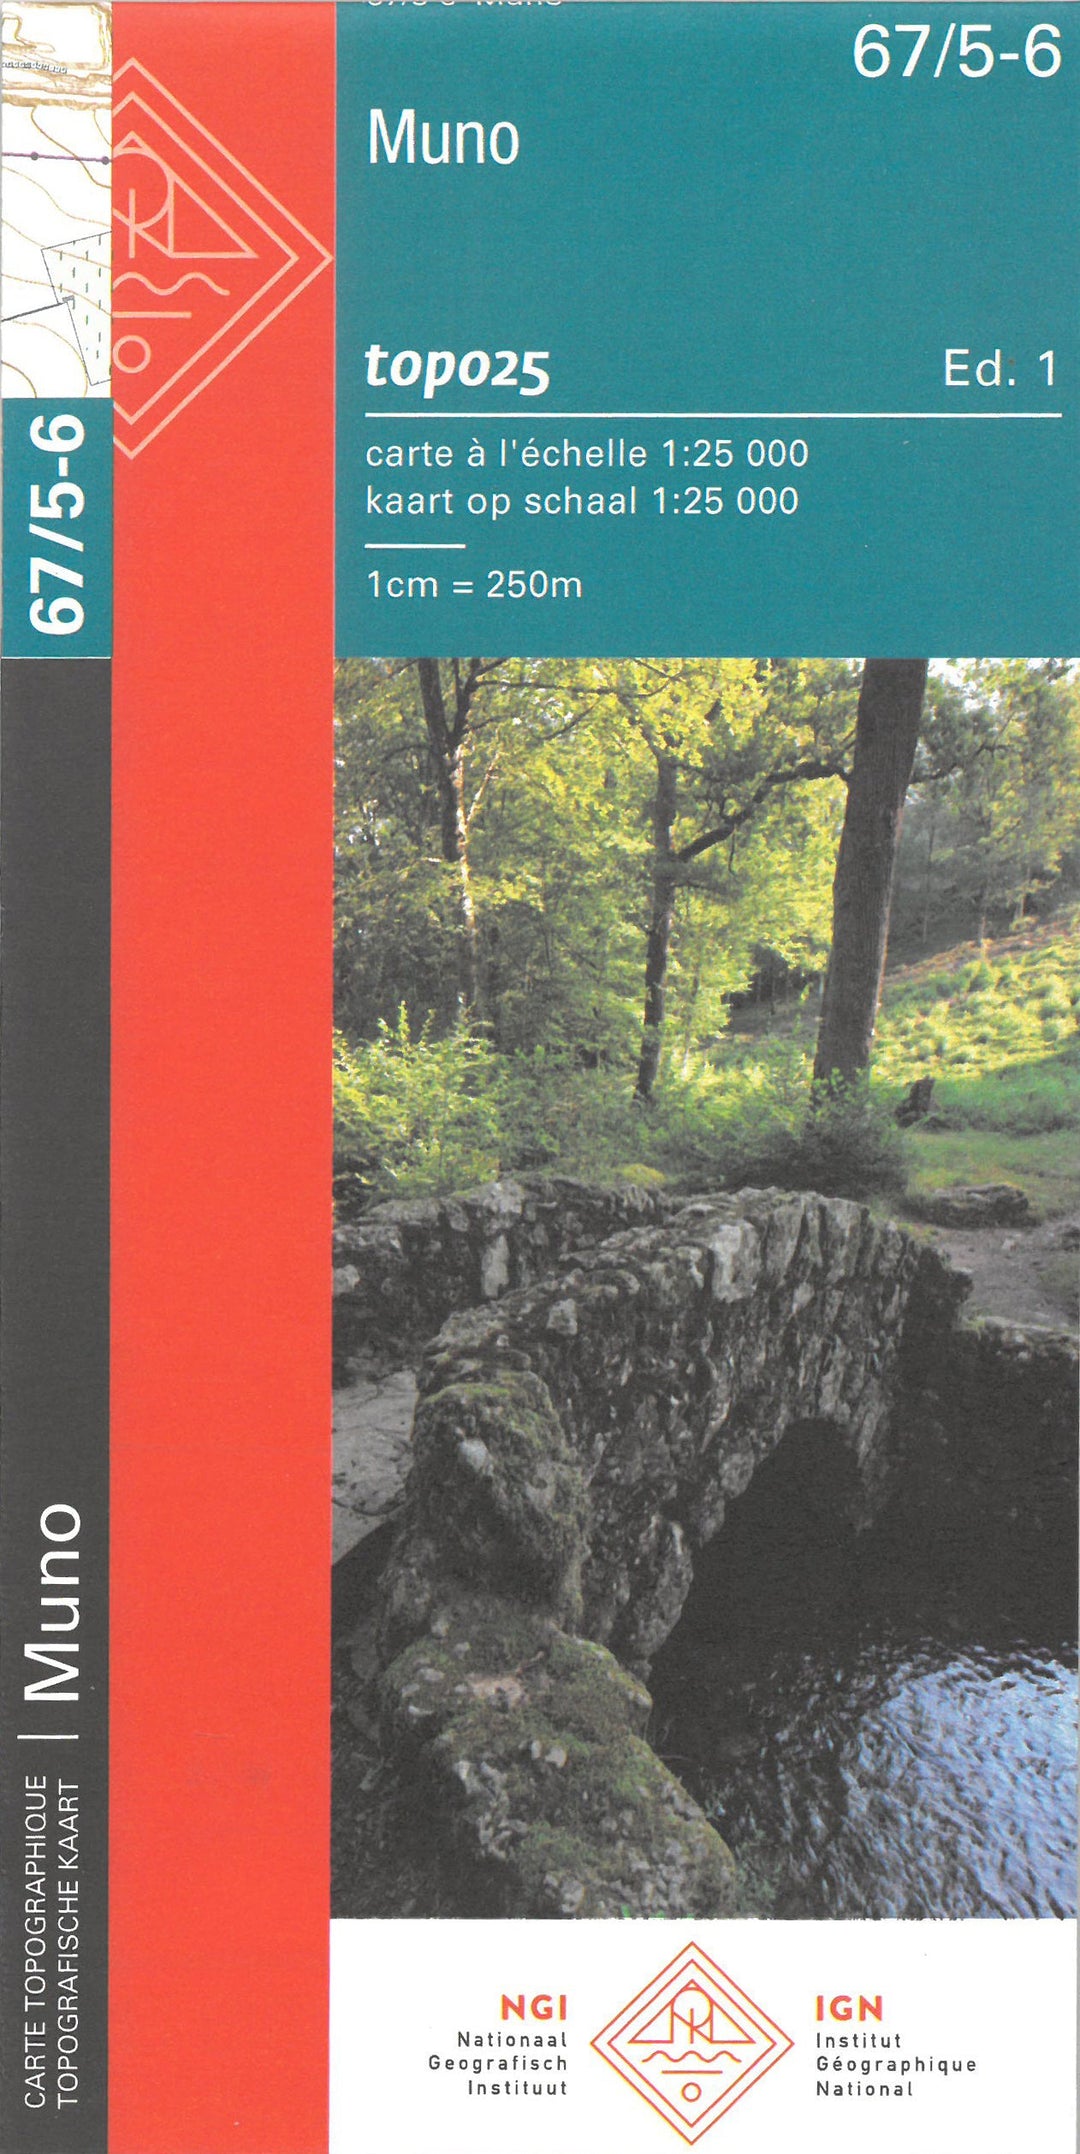 Carte topographique n° 67/5-6 - Muno (Belgique) | NGI topo 25 carte pliée IGN Belgique 